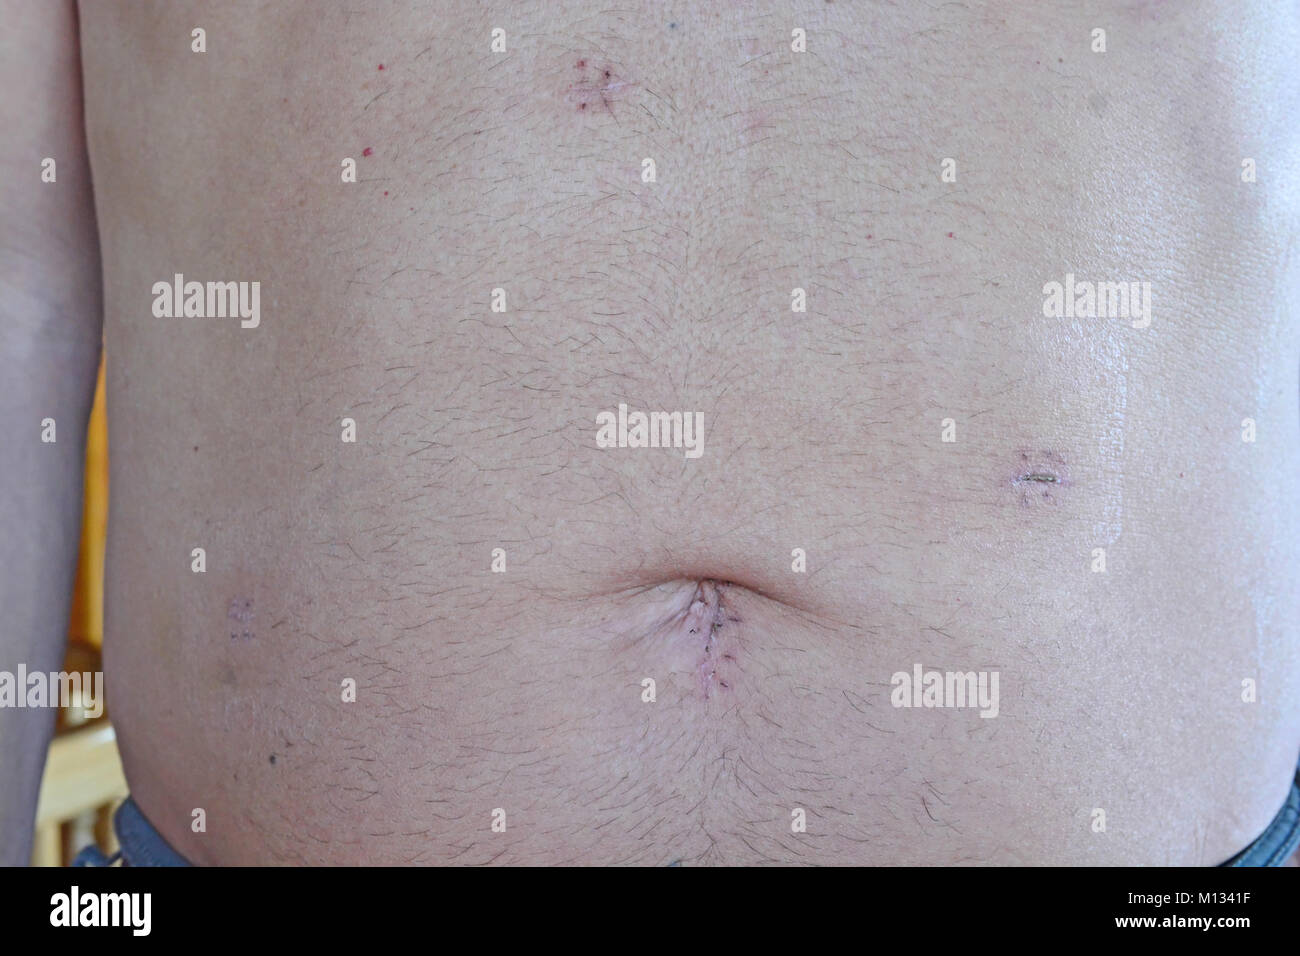 Männliche Patienten 14 Tage nach einem laparascopic cholocystectomy, einmal die Fäden entfernt wurden. Beachten Sie die Fast vernarbte unten links Stockfoto